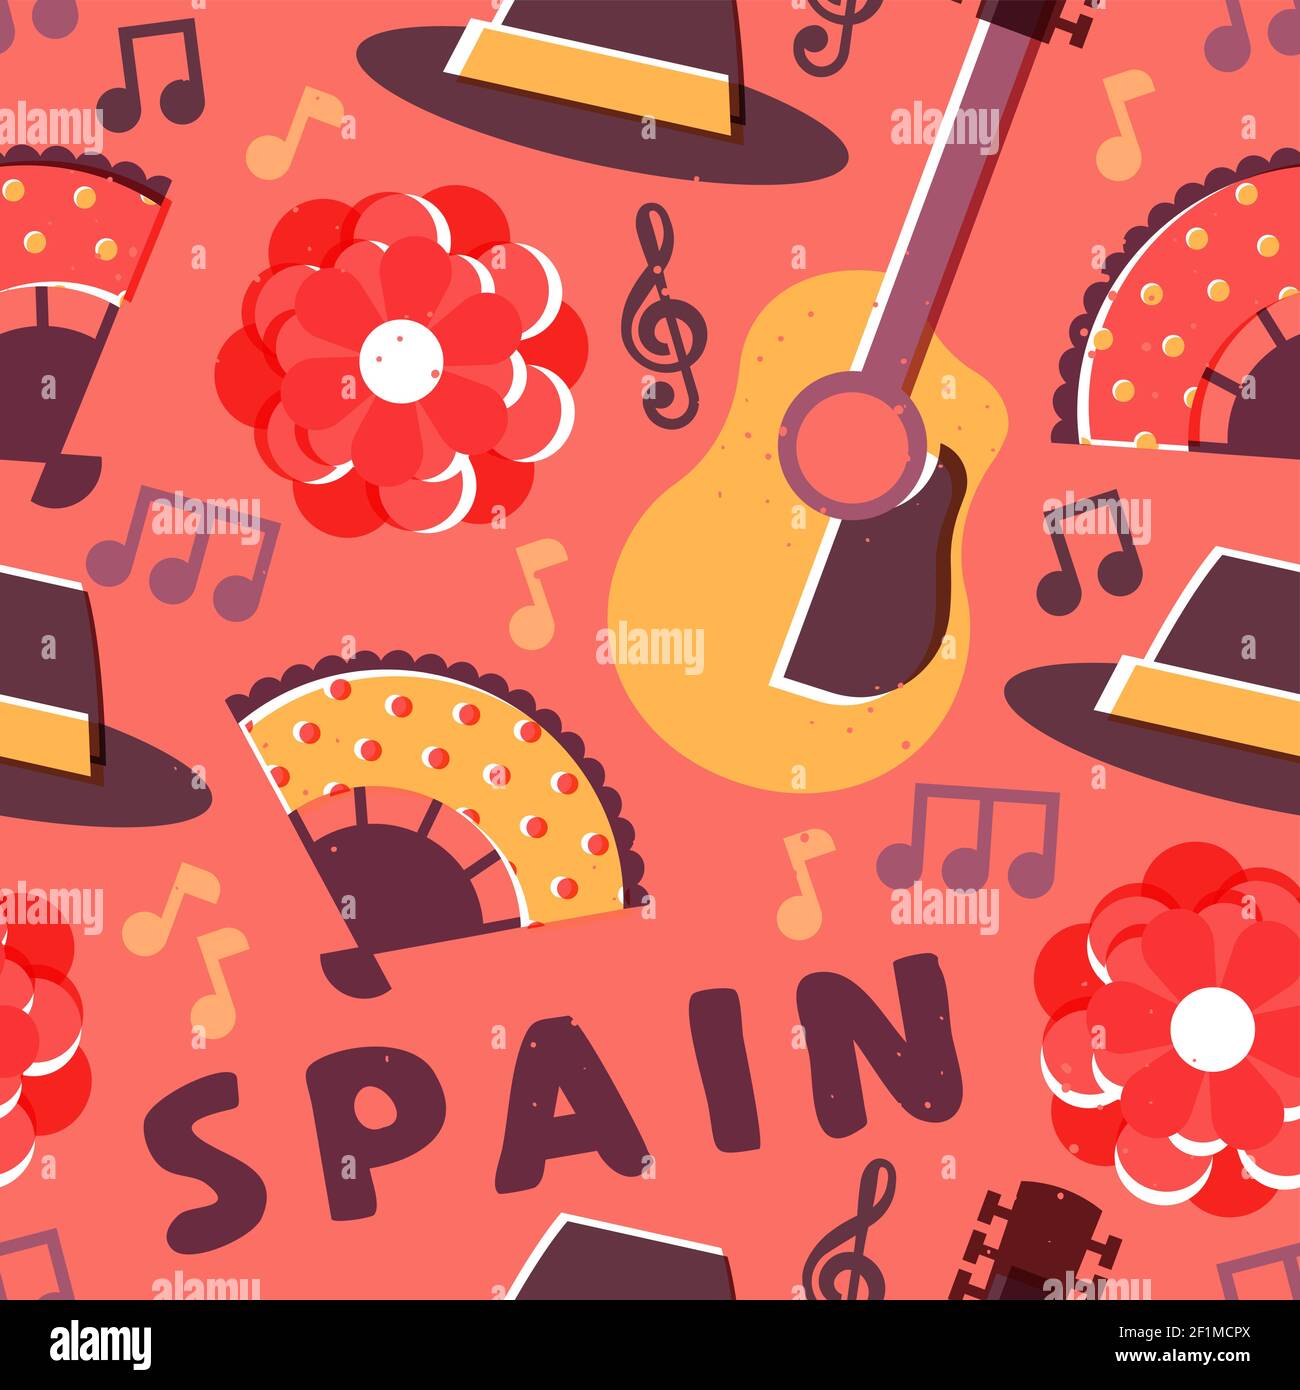 Spanische Kultur nahtlose Musterillustration. Spanien Reise Hintergrund Design mit Gitarre, Flamenco-Musik, Rose Blume, und mehr. Stock Vektor